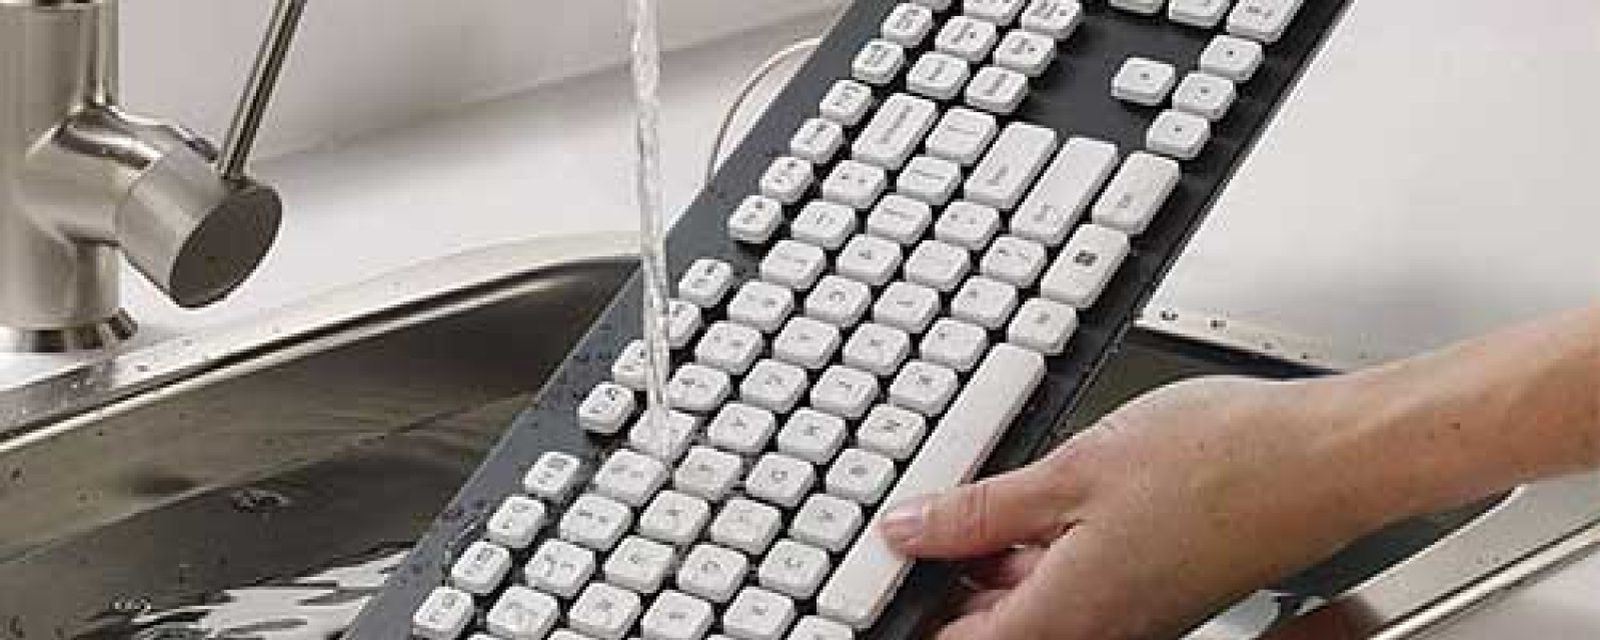 Foto: Logitech K310, un teclado 'todoterreno' que soporta el agua y los golpes